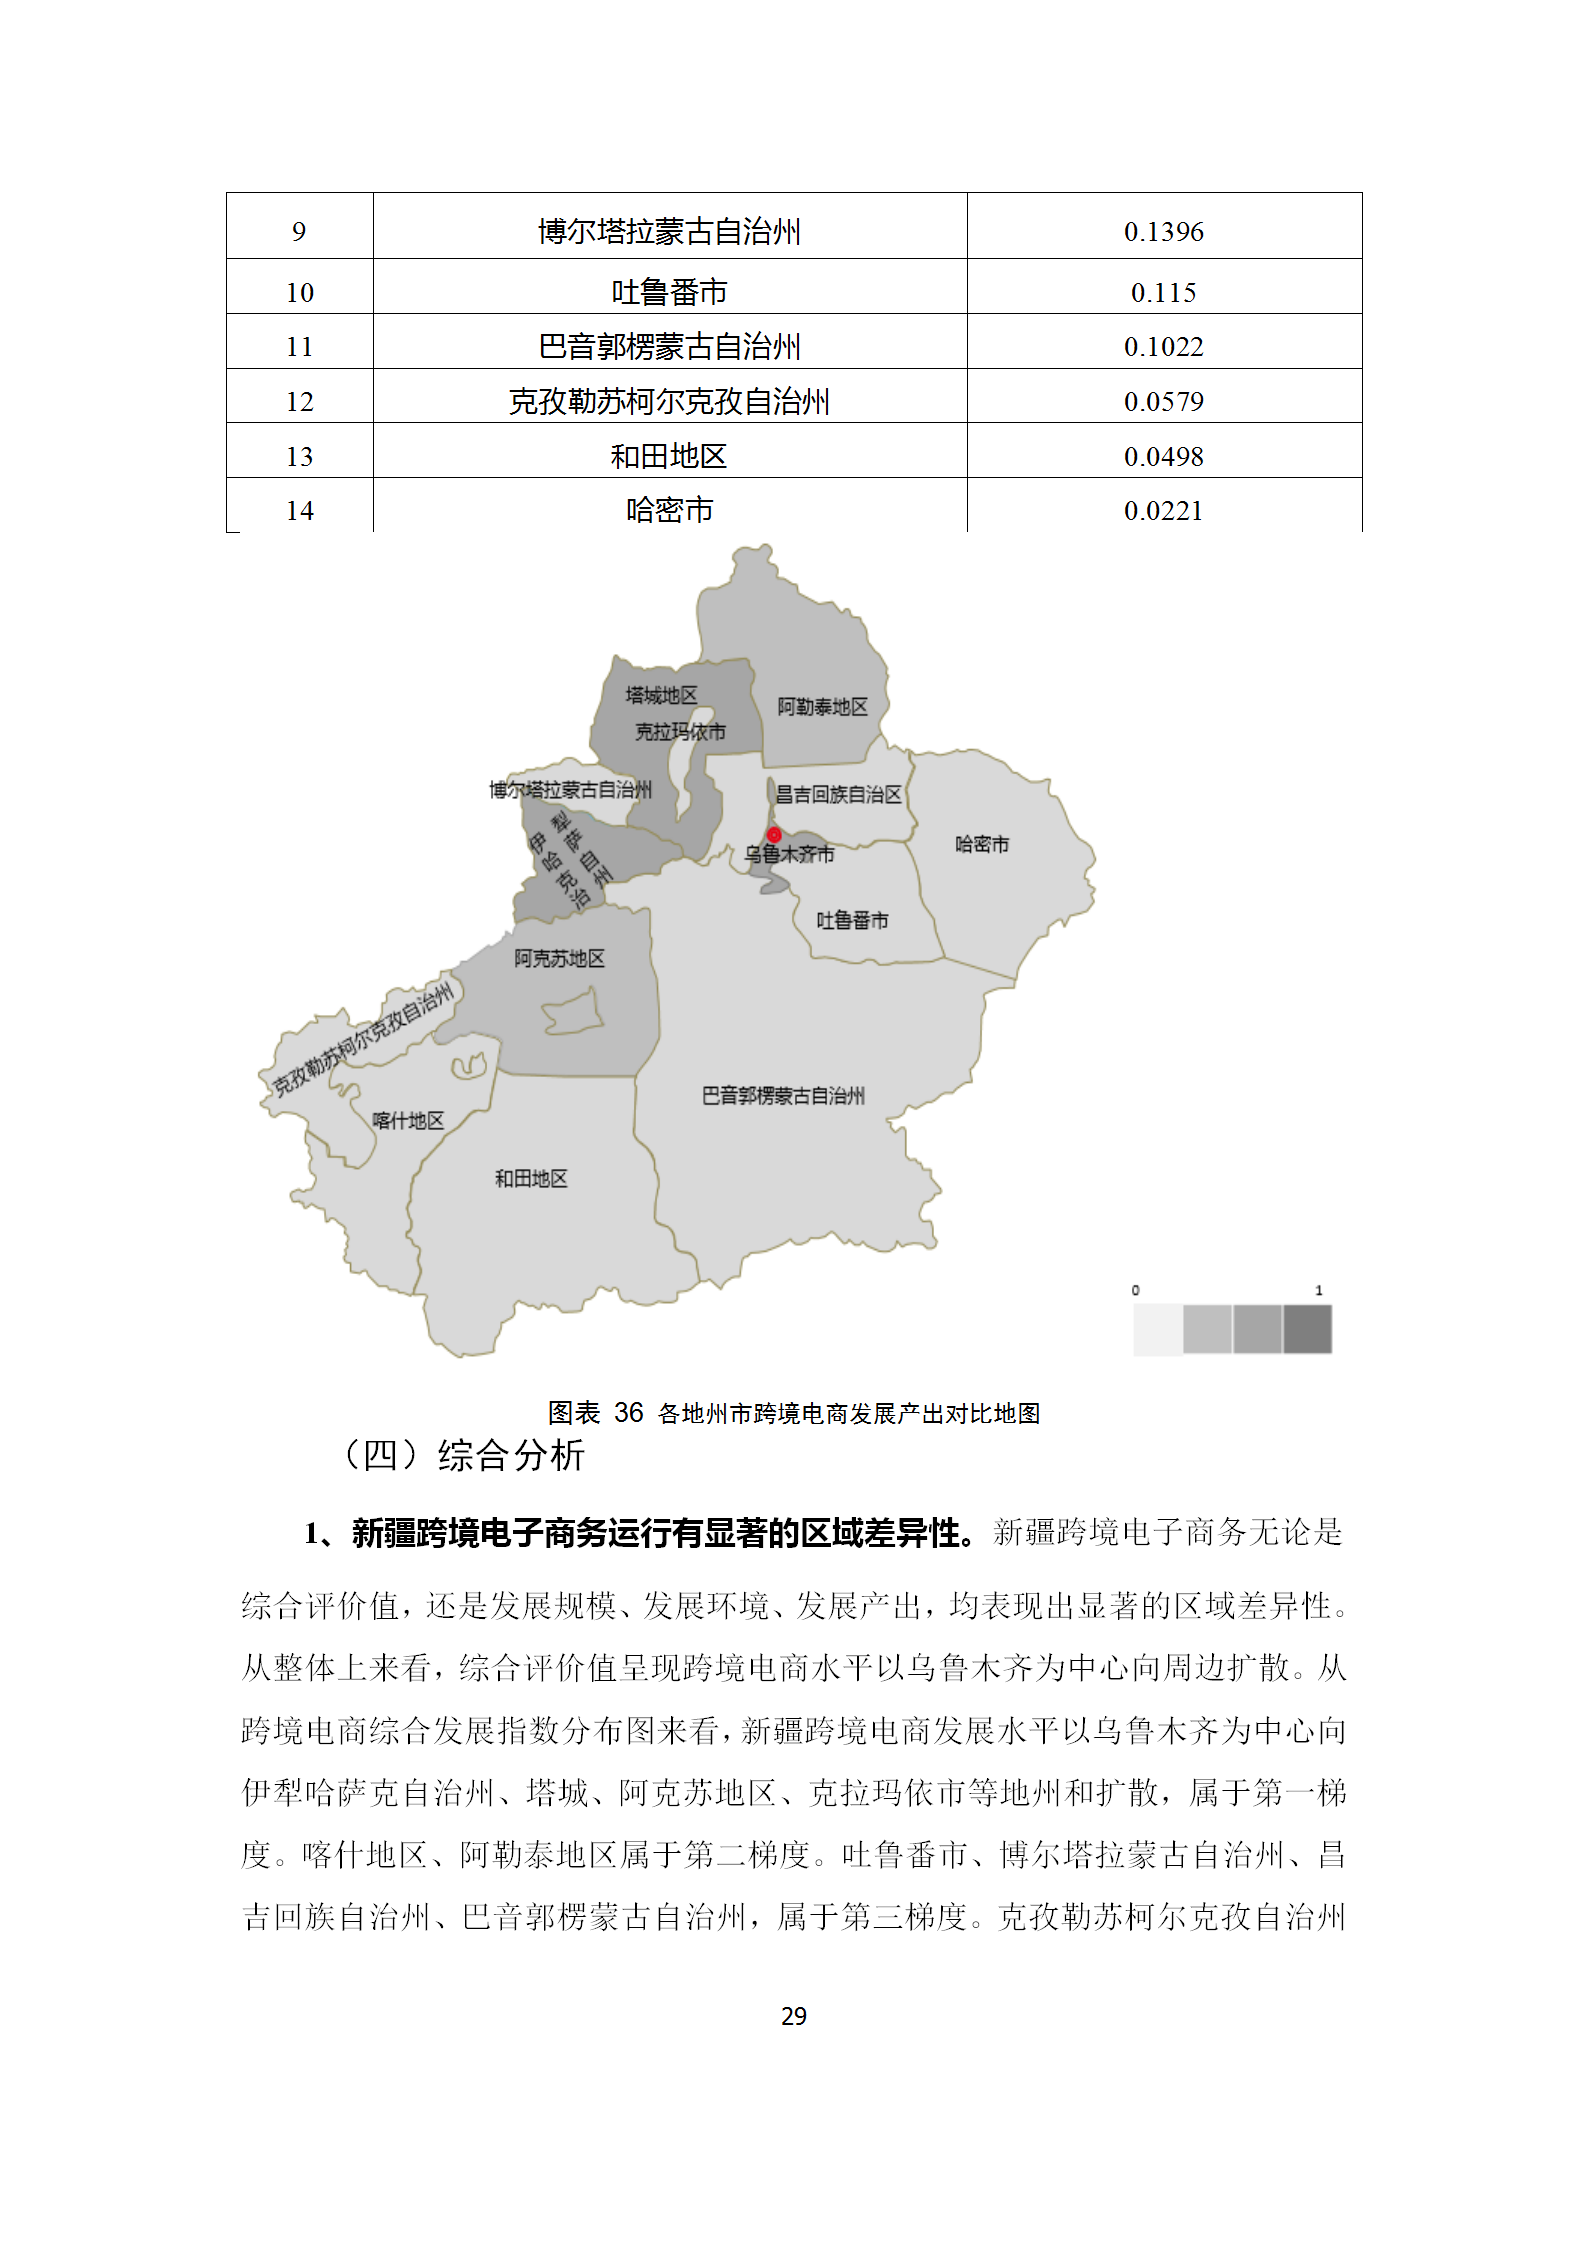 新疆跨境电子商务发展调研报告(2019)_32.png